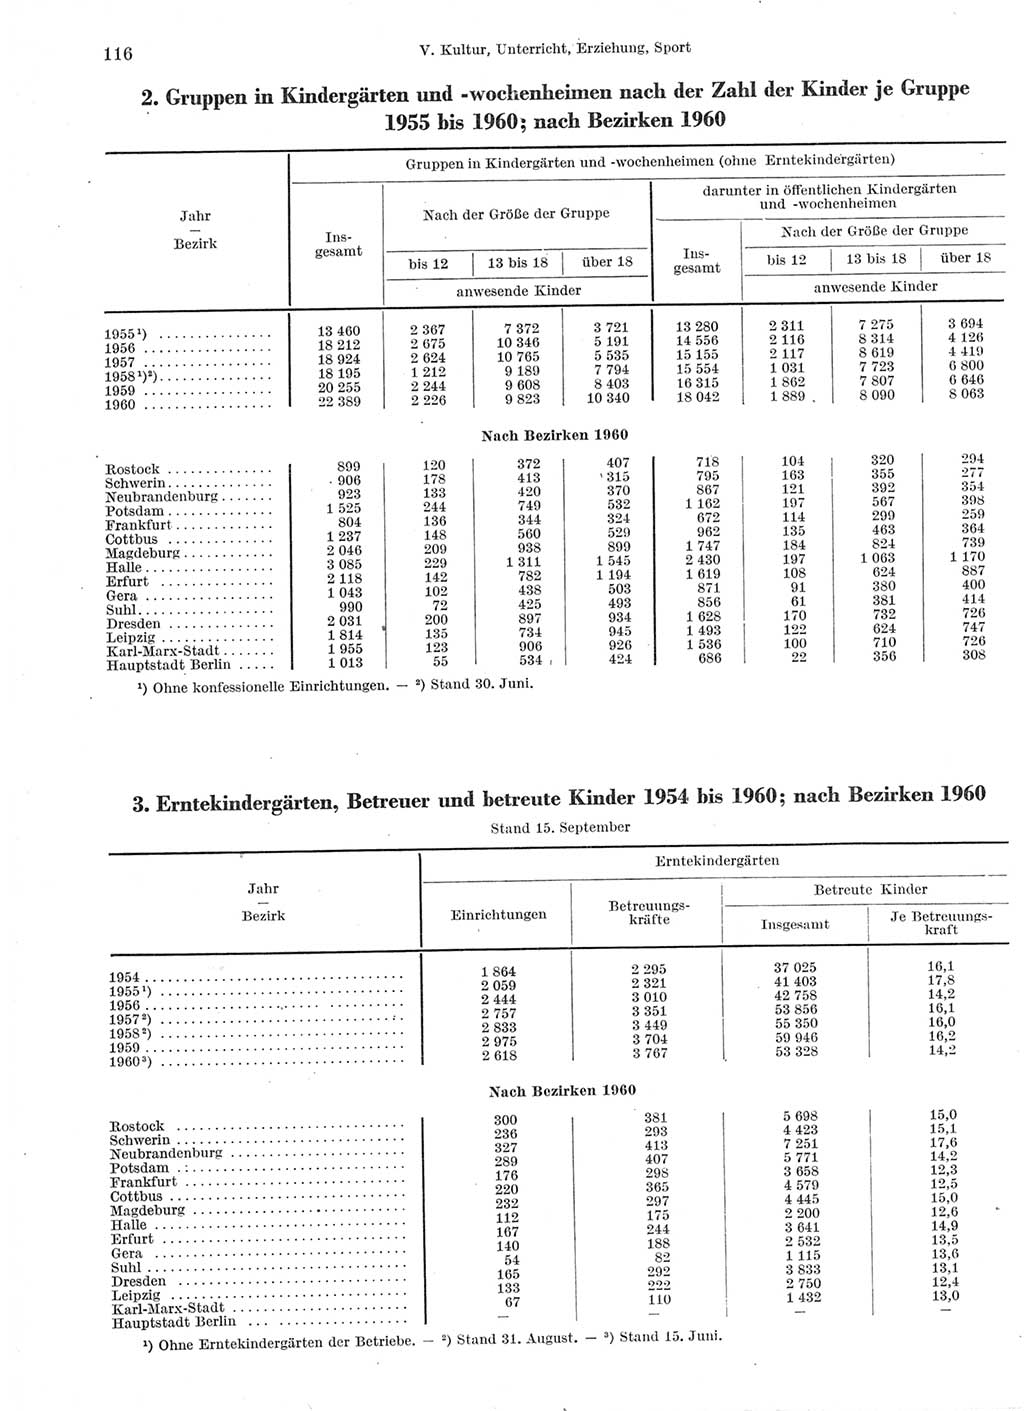 Statistisches Jahrbuch der Deutschen Demokratischen Republik (DDR) 1960-1961, Seite 116 (Stat. Jb. DDR 1960-1961, S. 116)